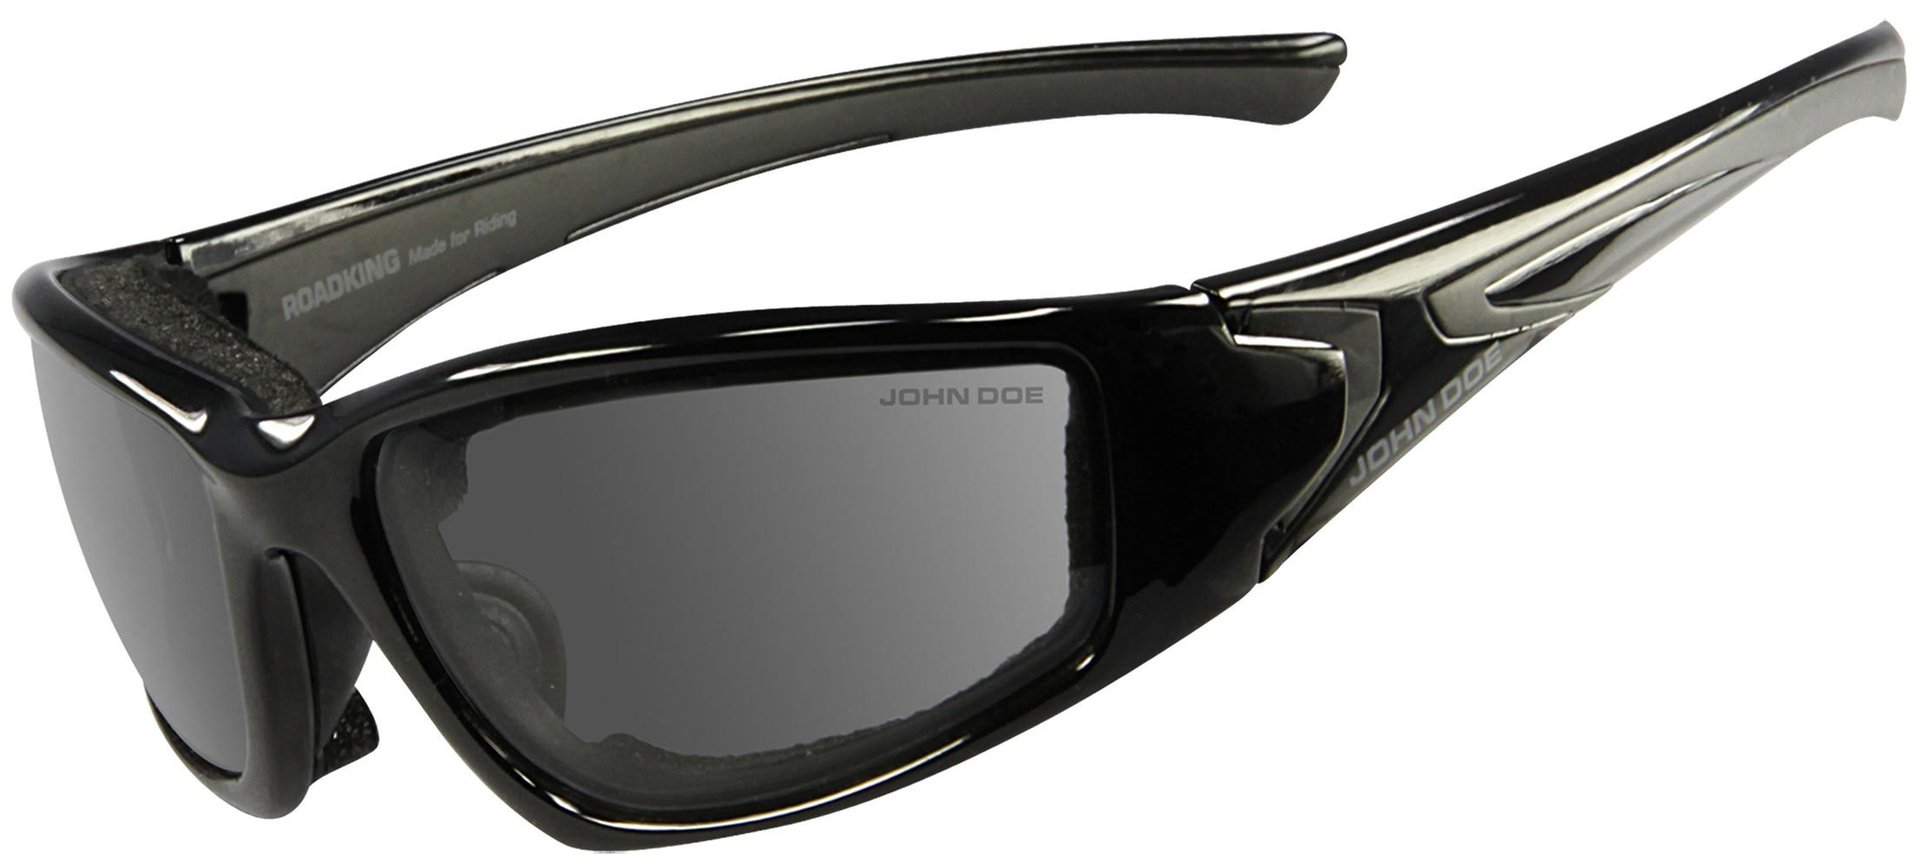 солнцезащитные очки черный Очки John Doe Roadking Photocromatic солнцезащитные, черный